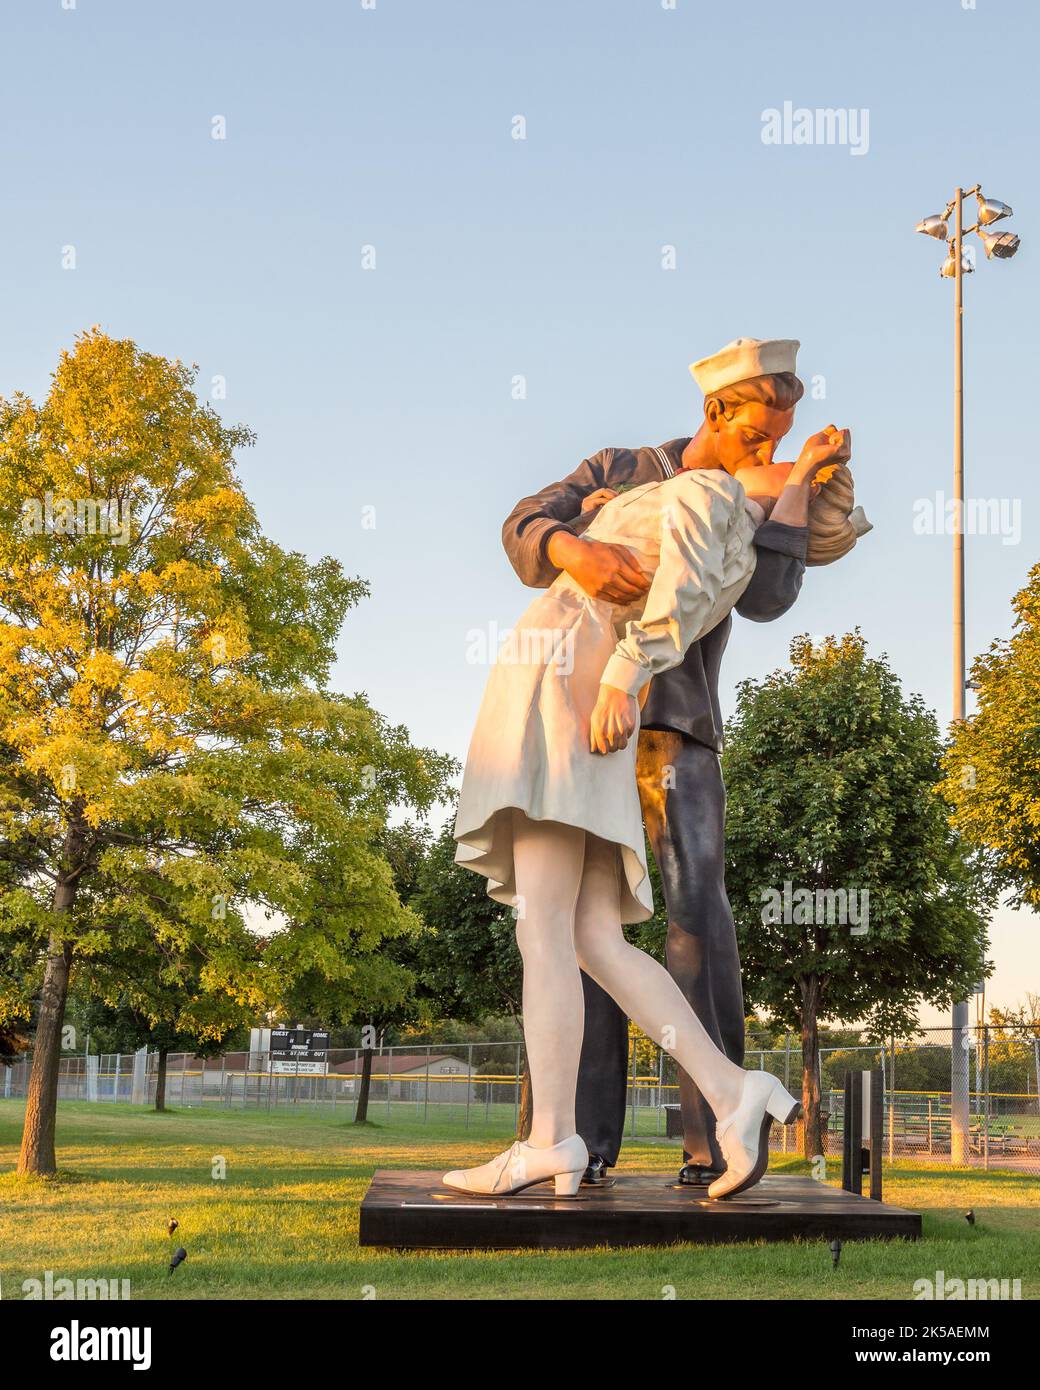 ROYAL OAK, MI/USA - 22. AUGUST 2016: Sonnenlicht fällt auf die Statue des Victory in Europe (VE) Day, auf der Woodward Avenue, im Memorial Park. Die Statue ist eine RE Stockfoto